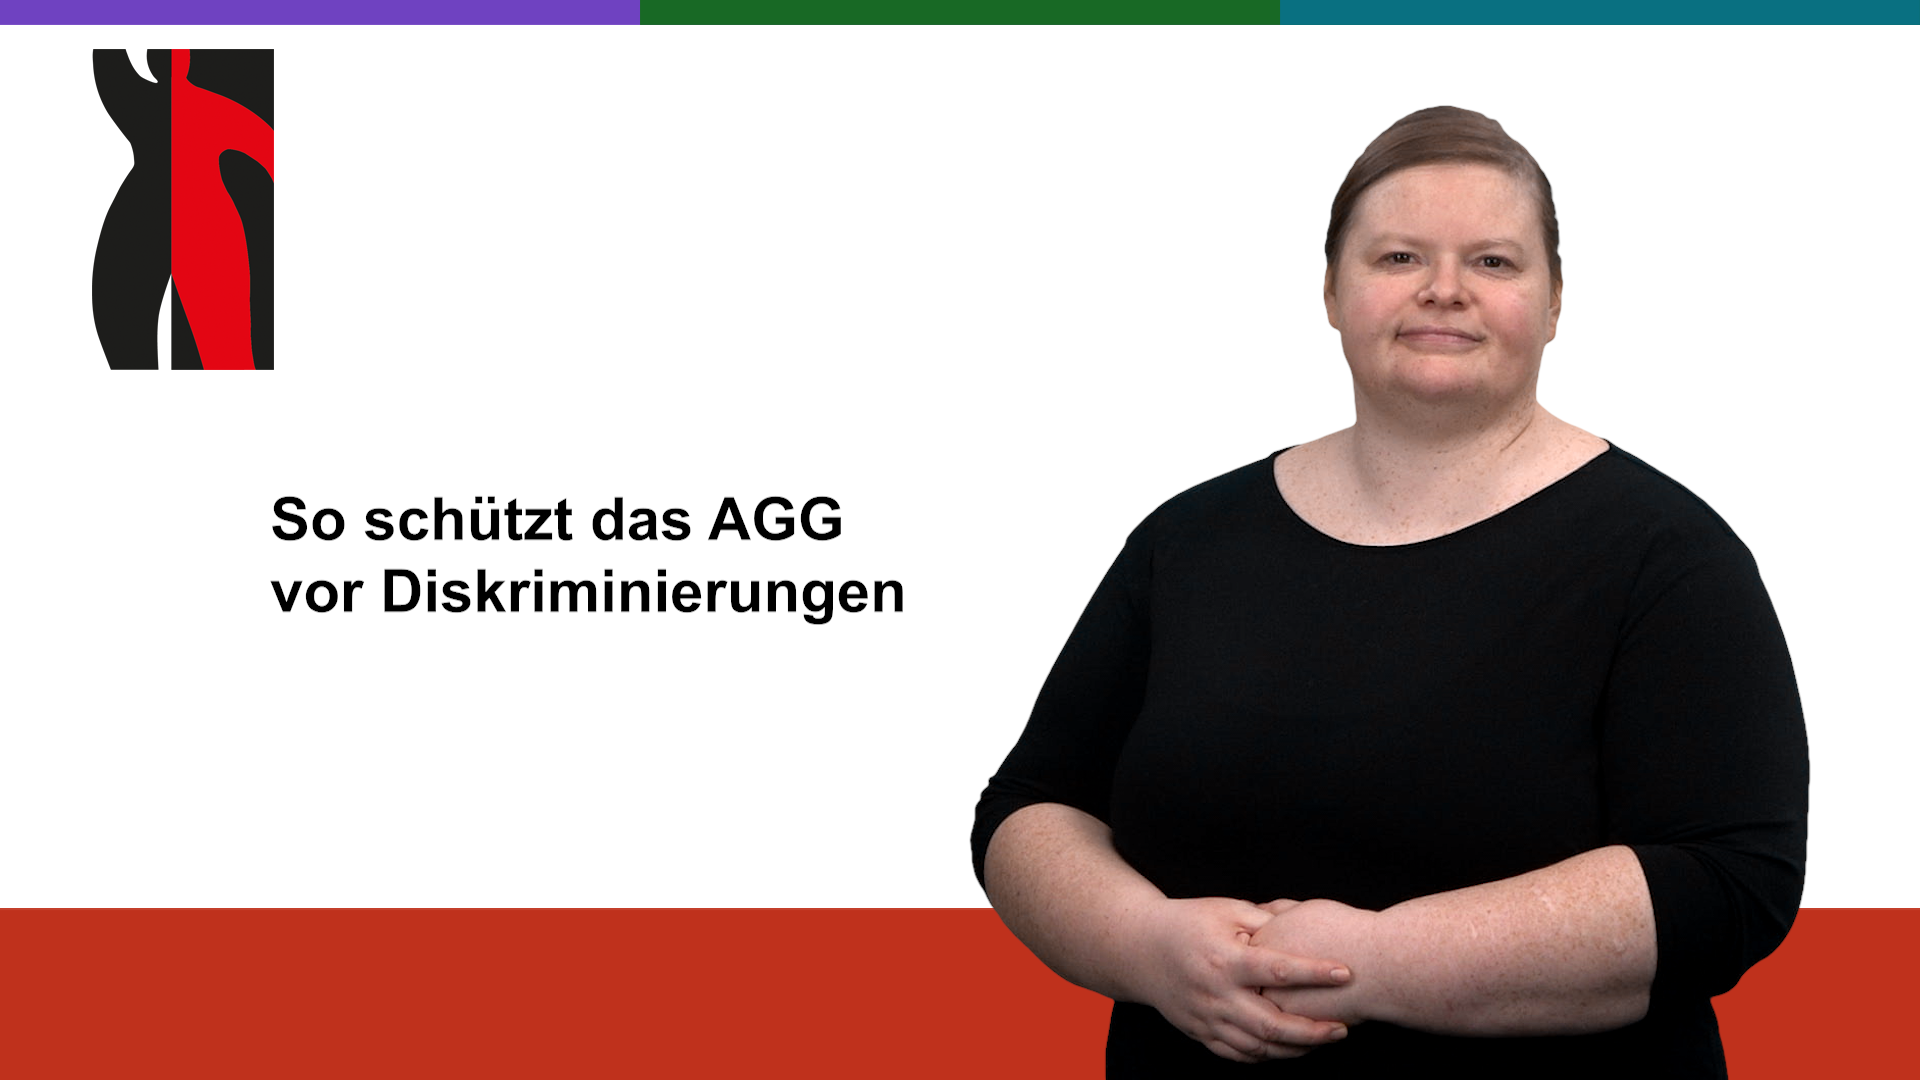 Startfoto zum Gebärdenvideo: So schützt das AGG vor Diskrminierung